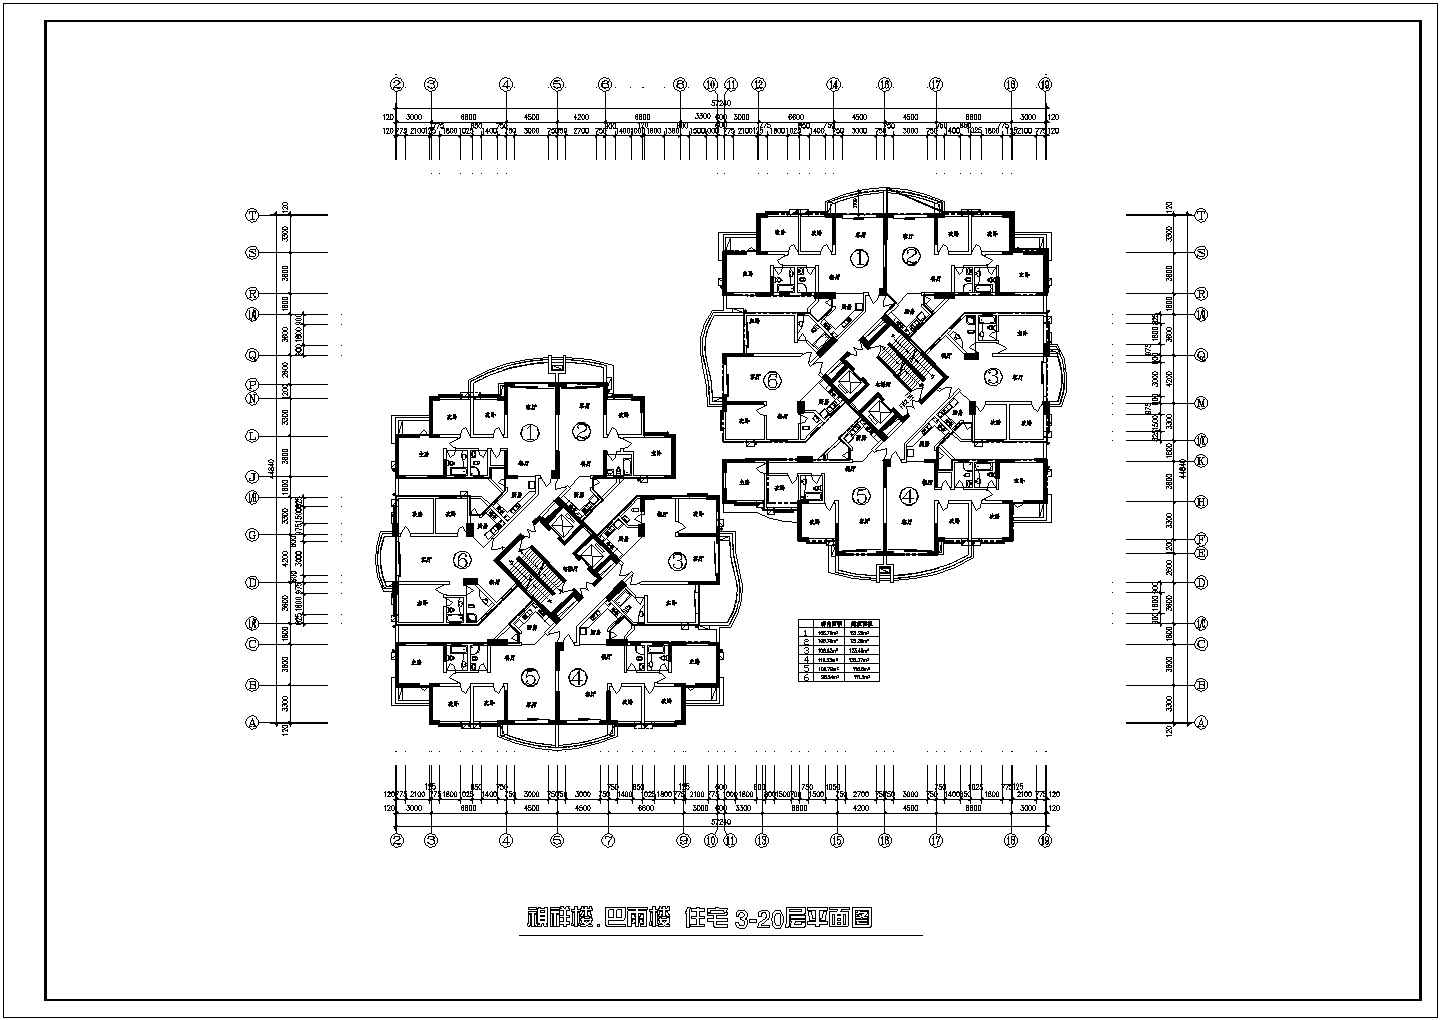 高层住宅户型楼层户型设计施工图（1楼梯2电梯6户 2个组合 2室2厅 3室2厅 110至135平米之间））